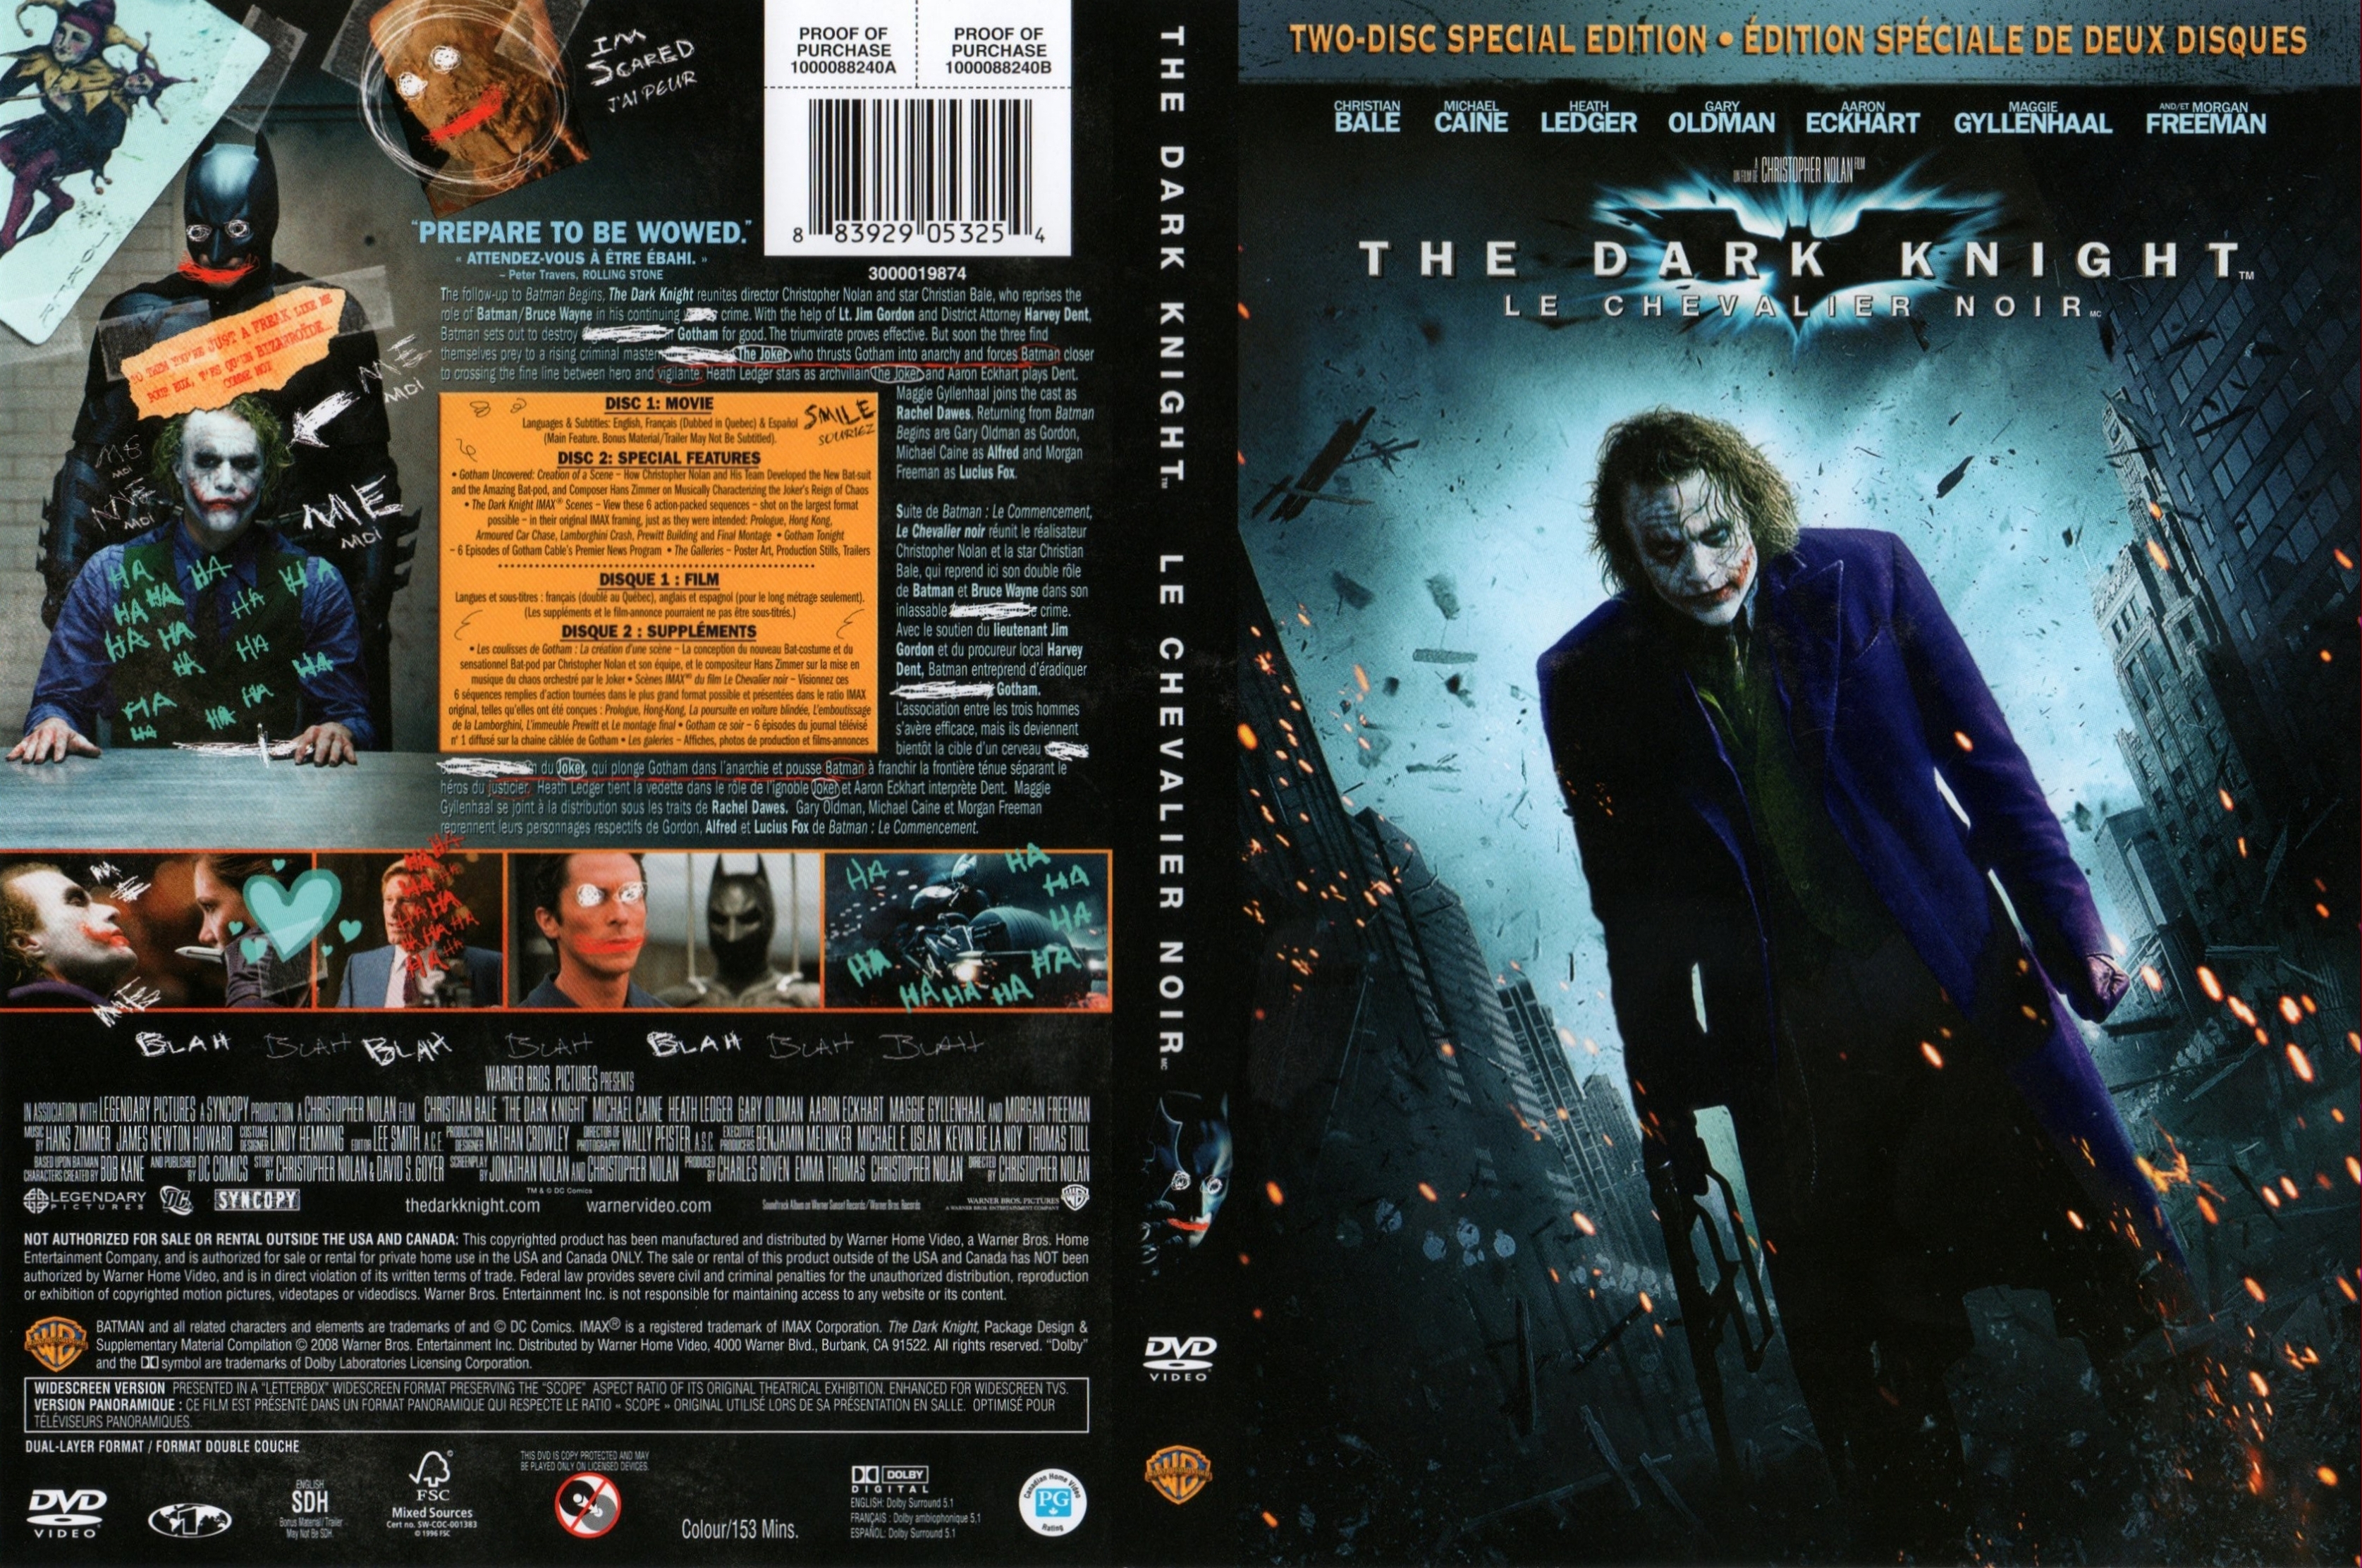 Jaquette DVD Batman the dark knight Zone 1 v2